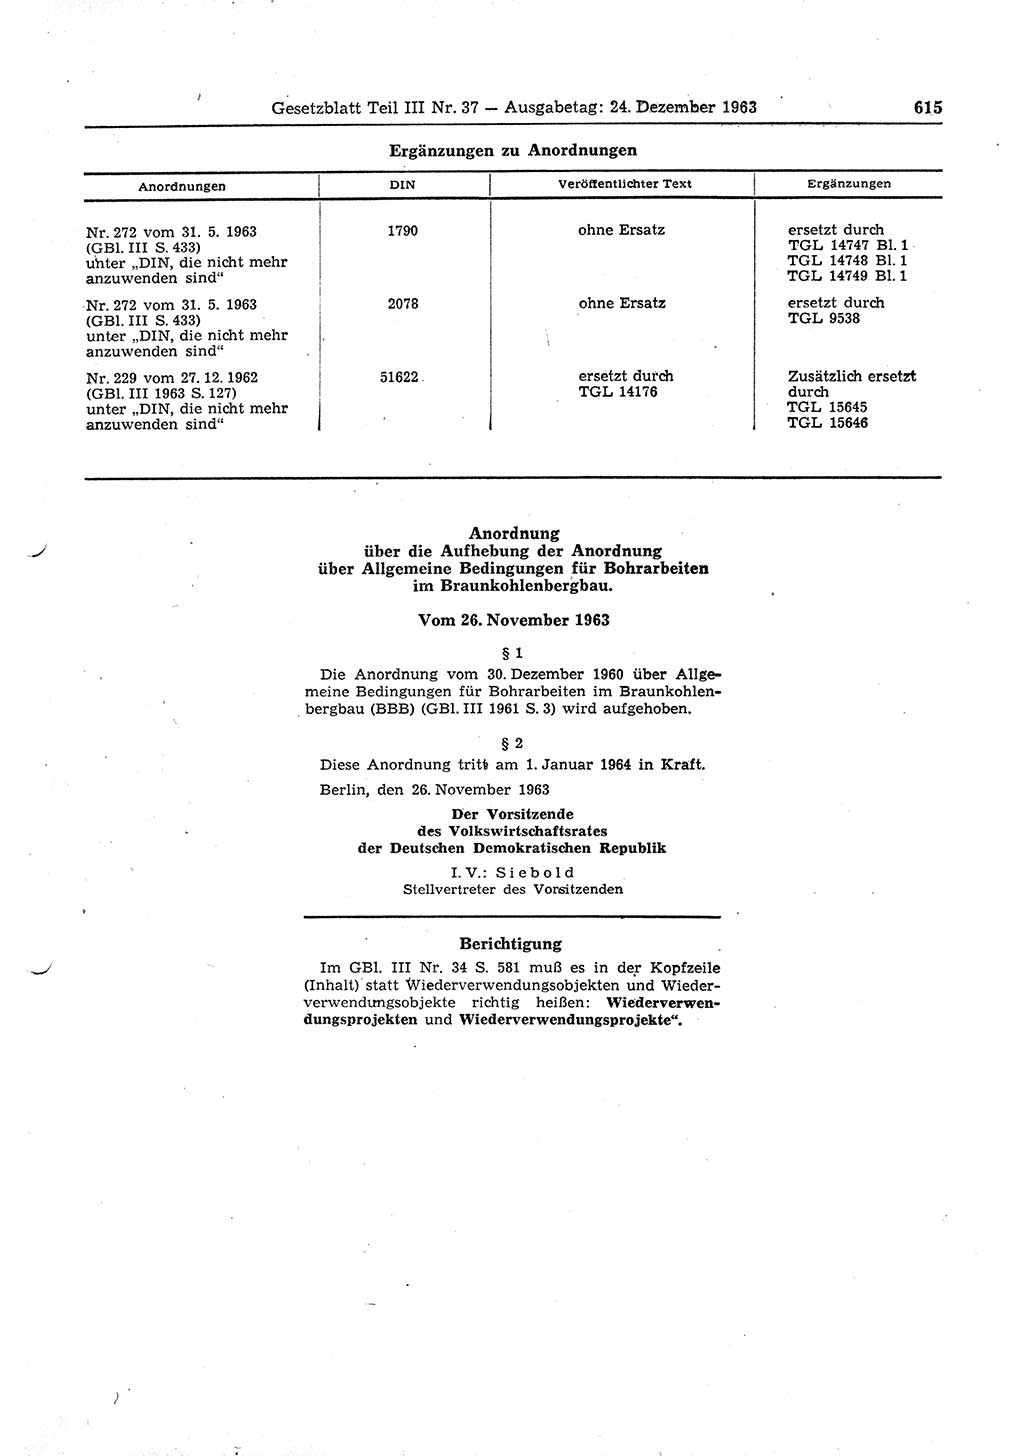 Gesetzblatt (GBl.) der Deutschen Demokratischen Republik (DDR) Teil ⅠⅠⅠ 1963, Seite 615 (GBl. DDR ⅠⅠⅠ 1963, S. 615)